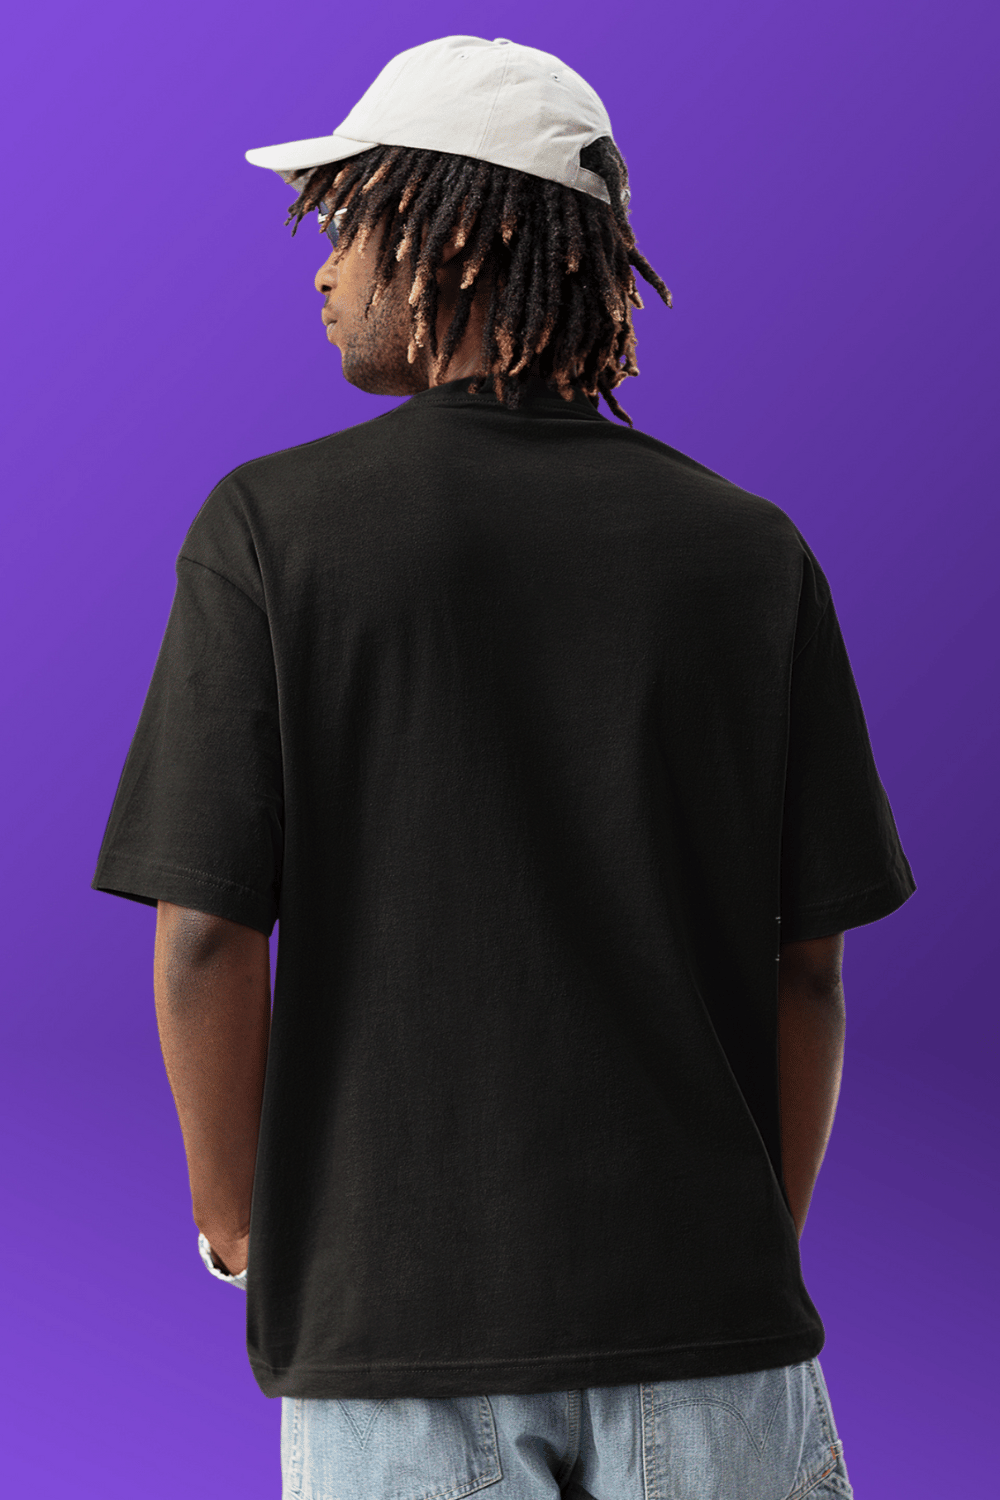 Kobe Bryant “Black Mamba” T-shirts ( Soft Cotton)